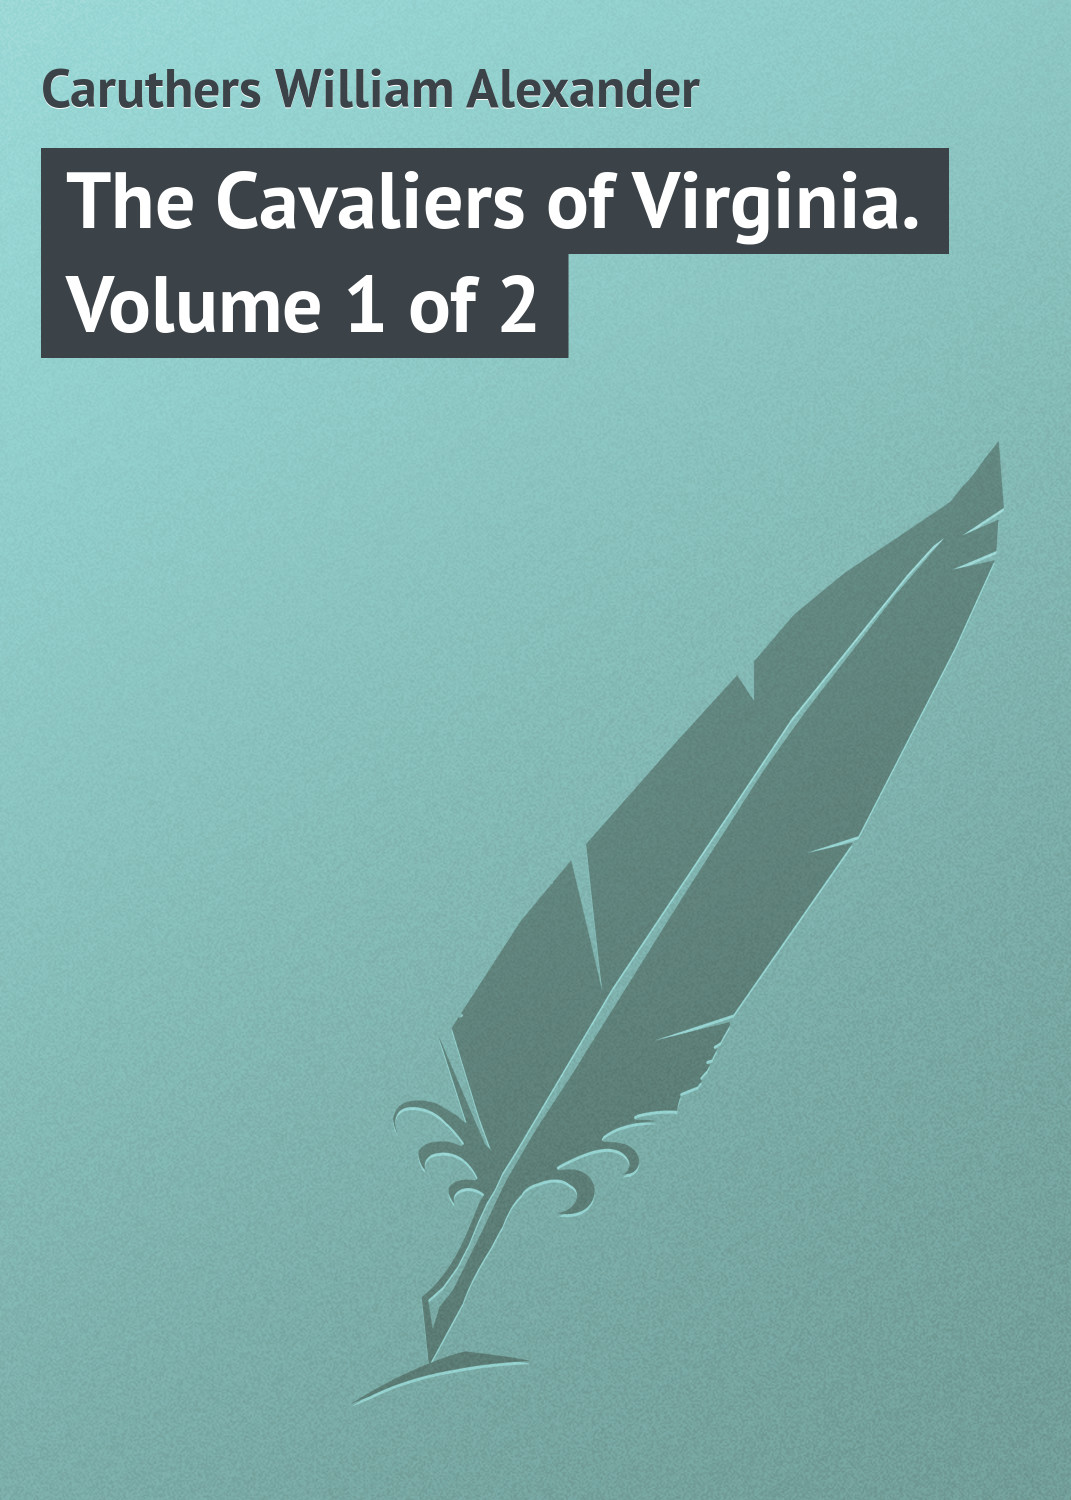 Книга The Cavaliers of Virginia. Volume 1 of 2 из серии , созданная William Caruthers, может относится к жанру Зарубежная классика, Иностранные языки. Стоимость электронной книги The Cavaliers of Virginia. Volume 1 of 2 с идентификатором 23146315 составляет 5.99 руб.